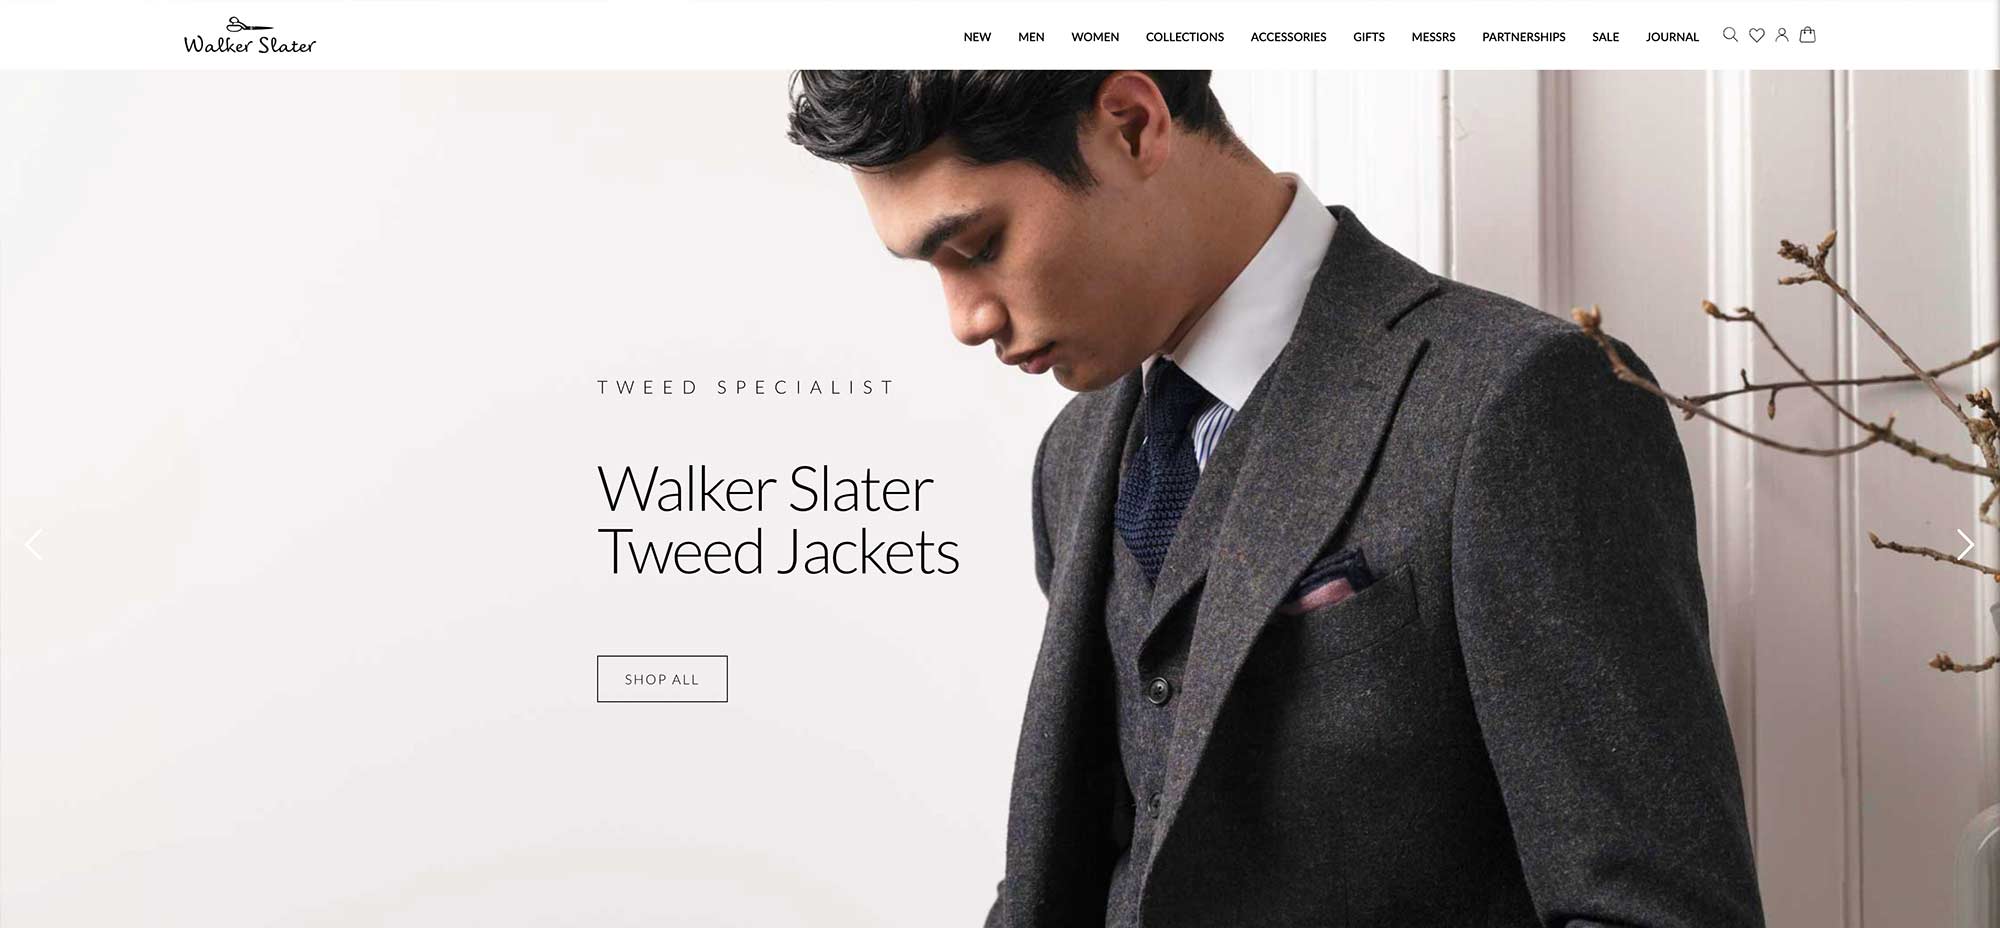 Walker Slater Online Shop